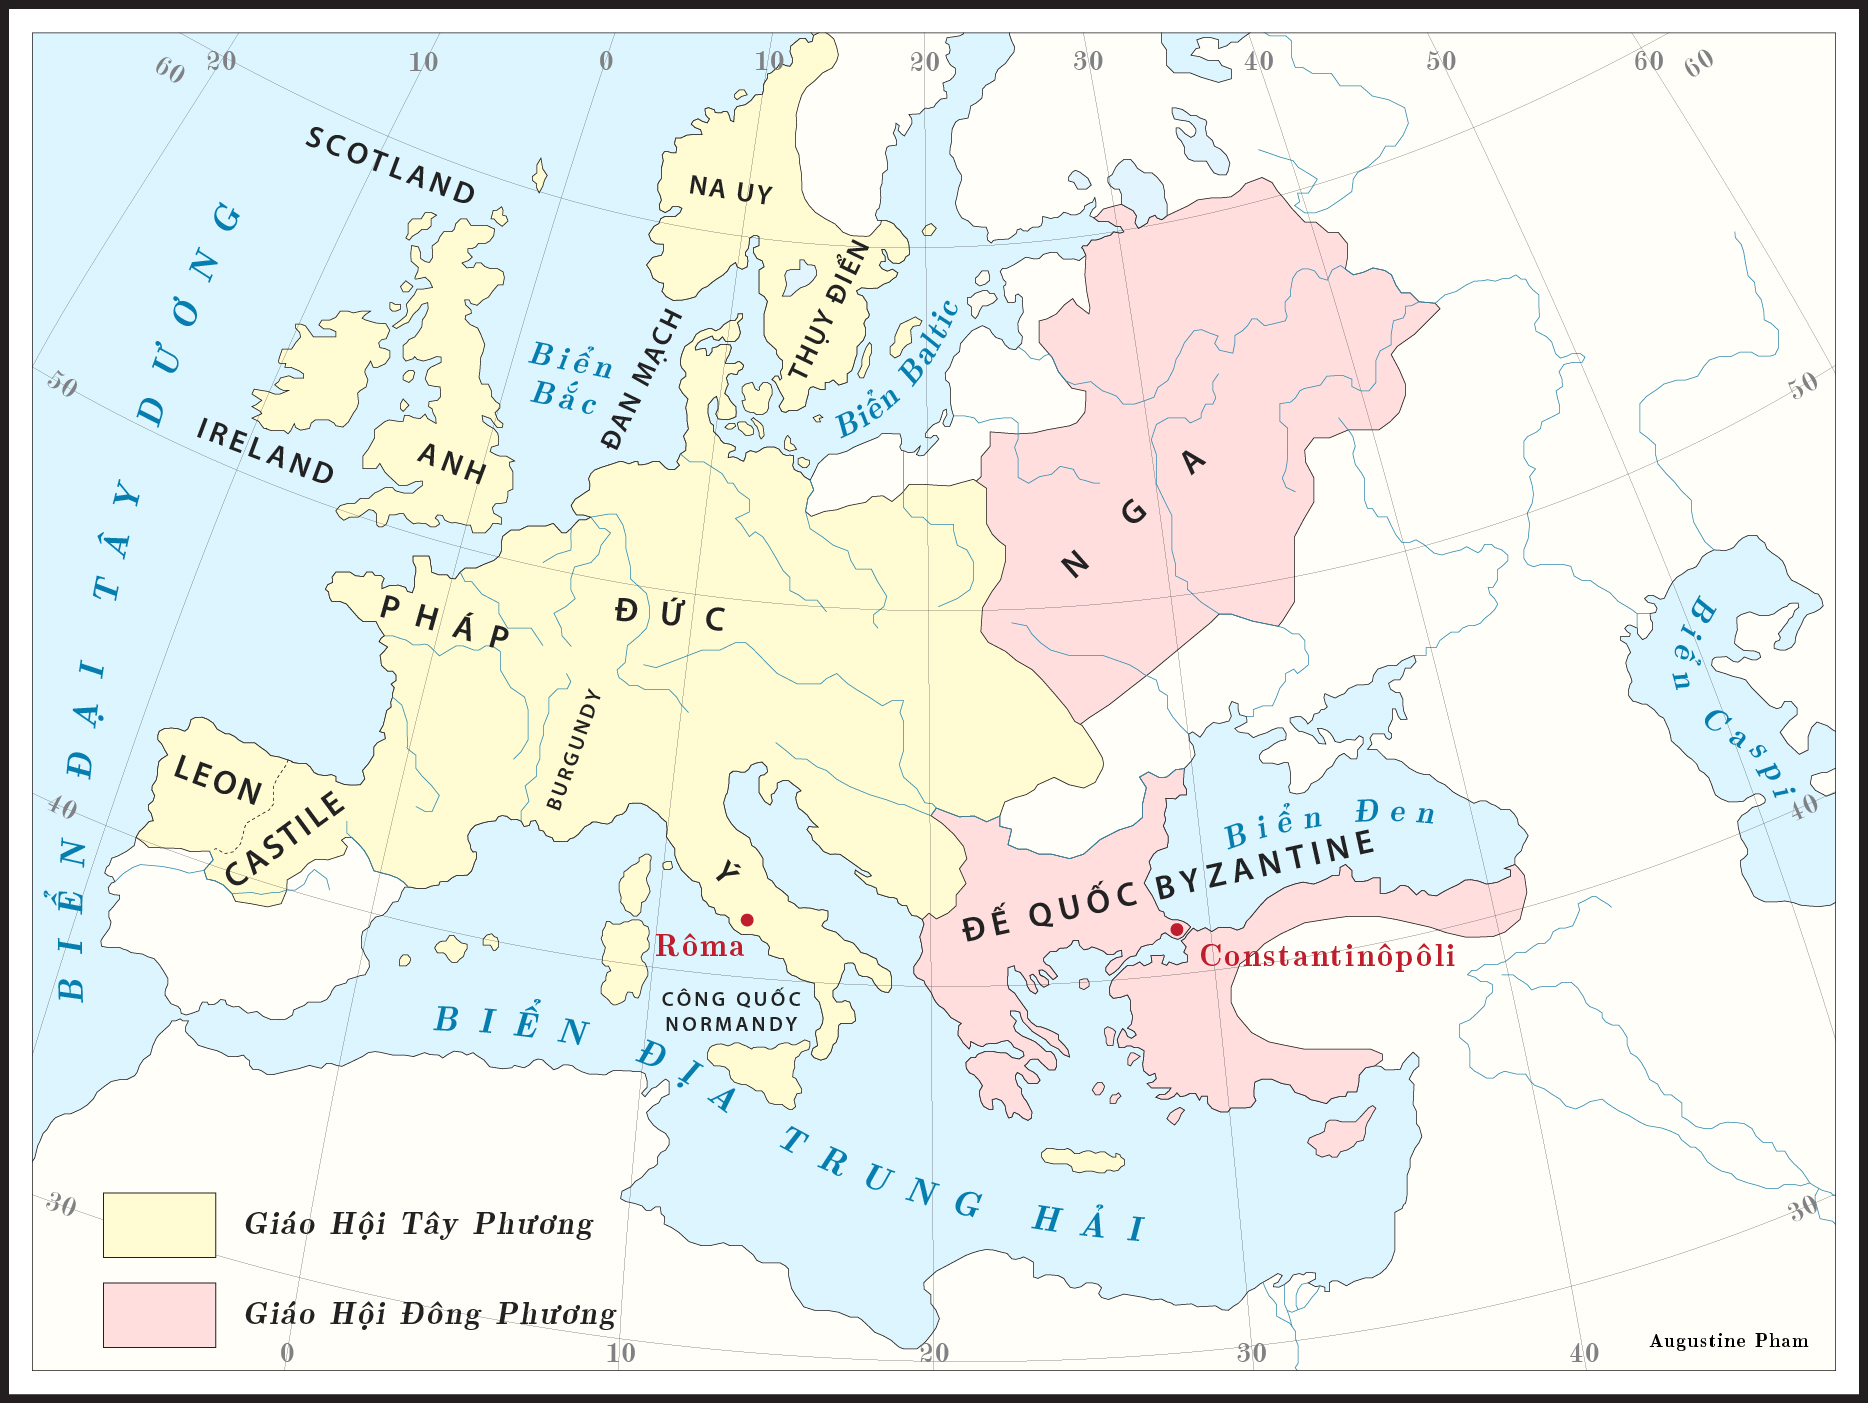 Giáo Hội Đông Phương và Tây Phương ở thời điểm Đại Ly Giáo